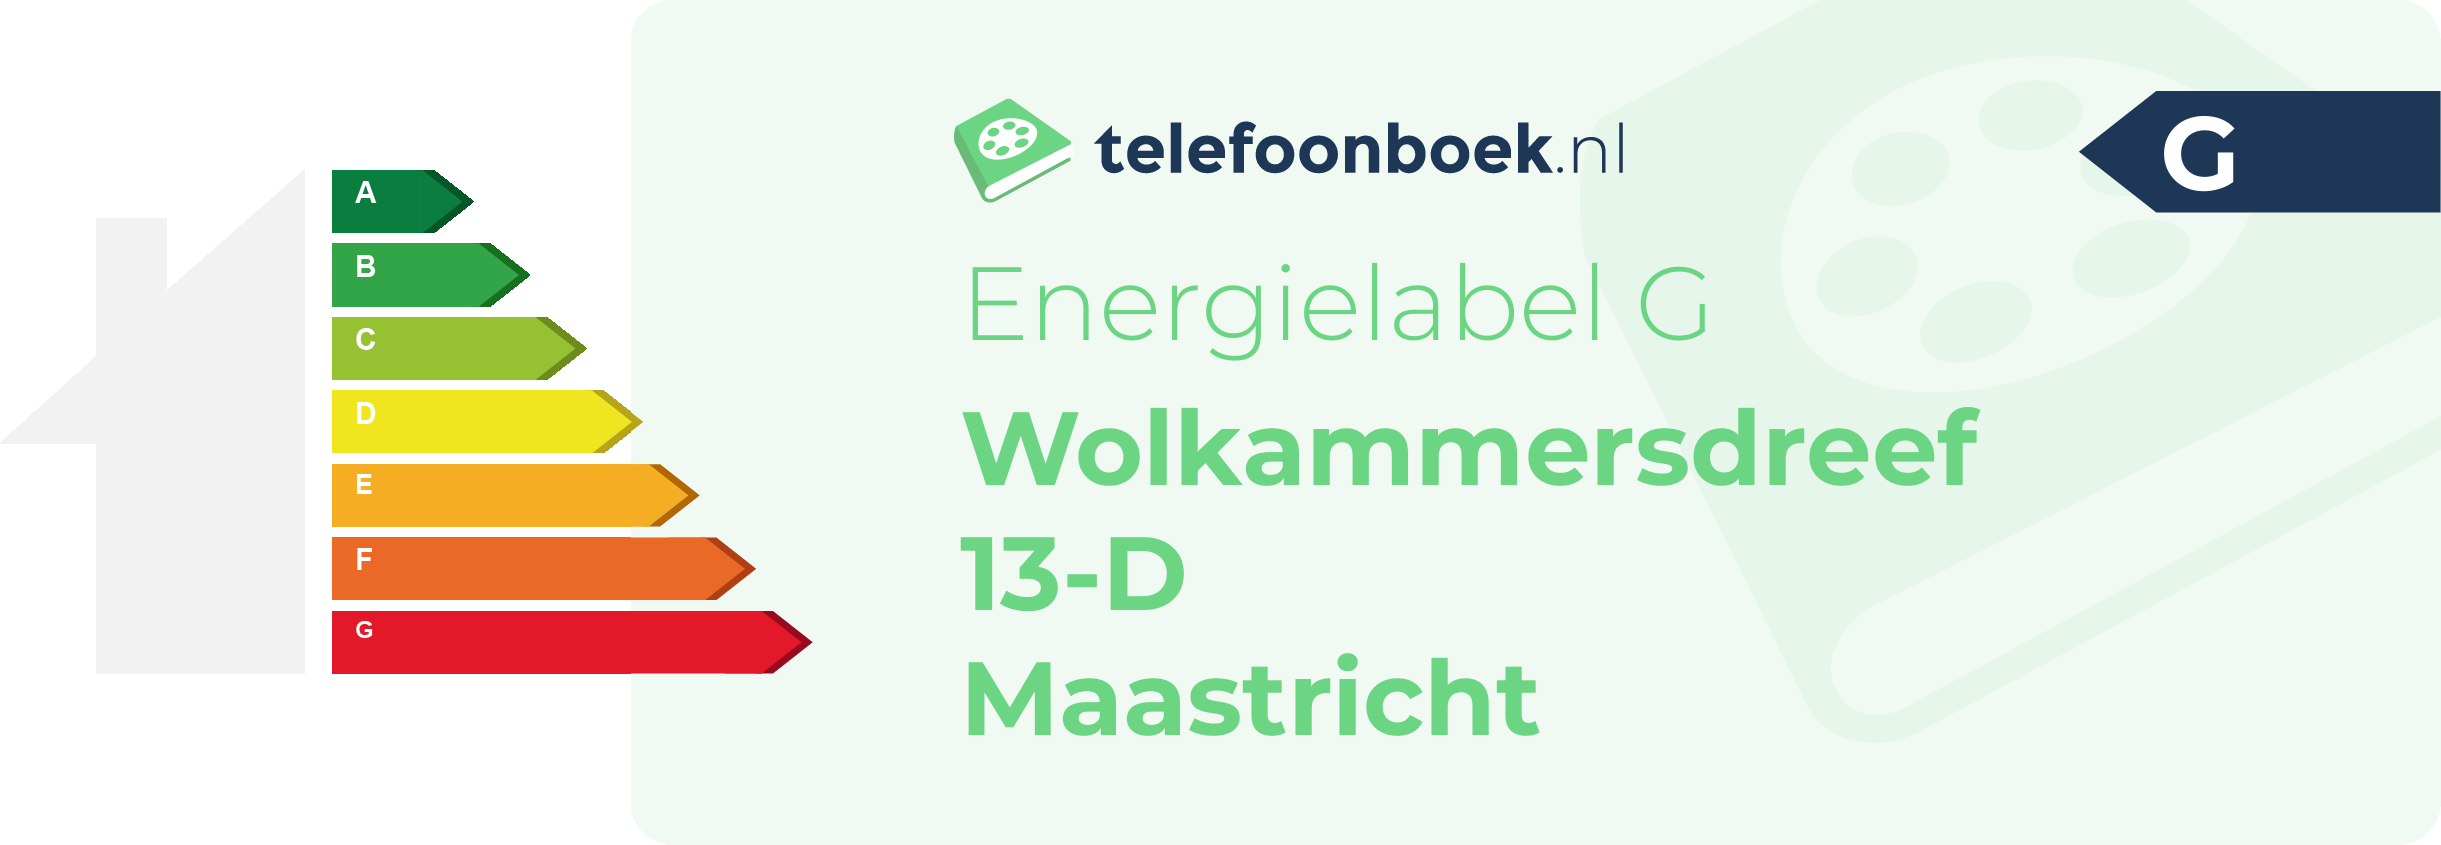 Energielabel Wolkammersdreef 13-D Maastricht